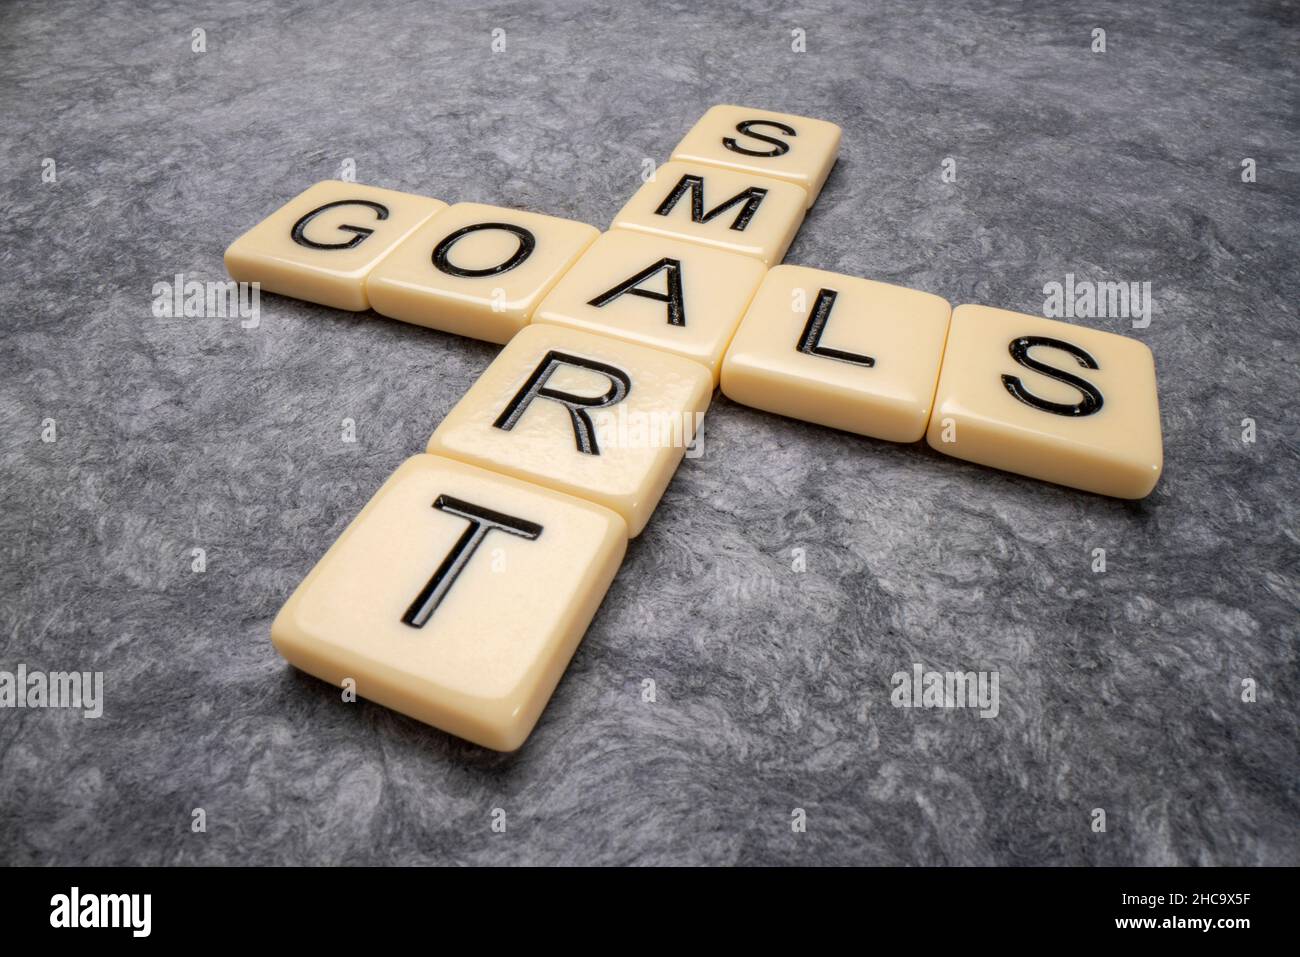 SMART Goals - Kreuzworträtsel in Elfenbeinbuchstaben gegen texturiertes Papier, Zielsetzung, Geschäfts- und Persönlichkeitskonzept Stockfoto